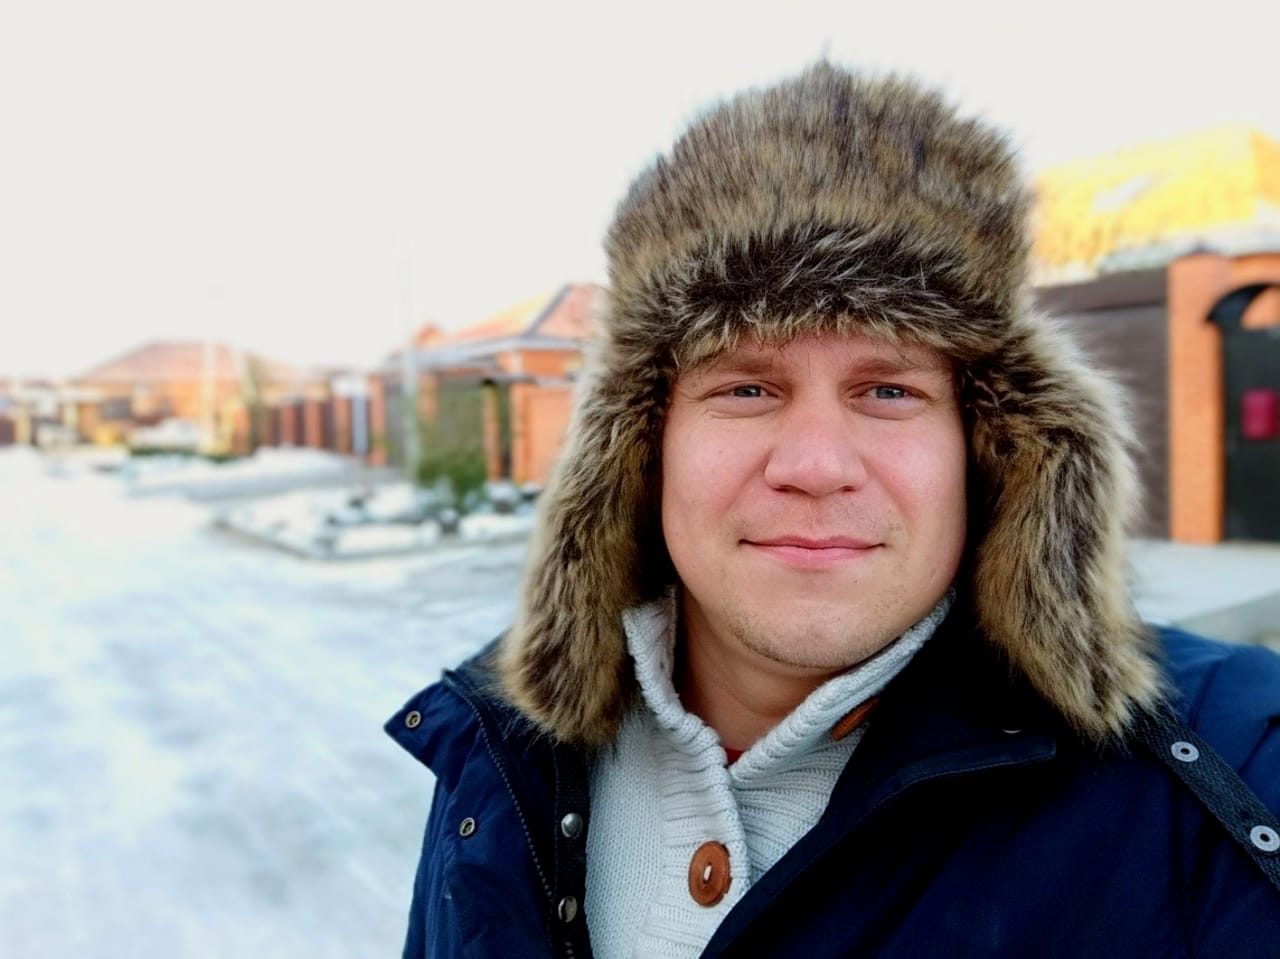 Волгодонец Кирилл Антонов хочет похудеть в проекте "Сбросить лишне"